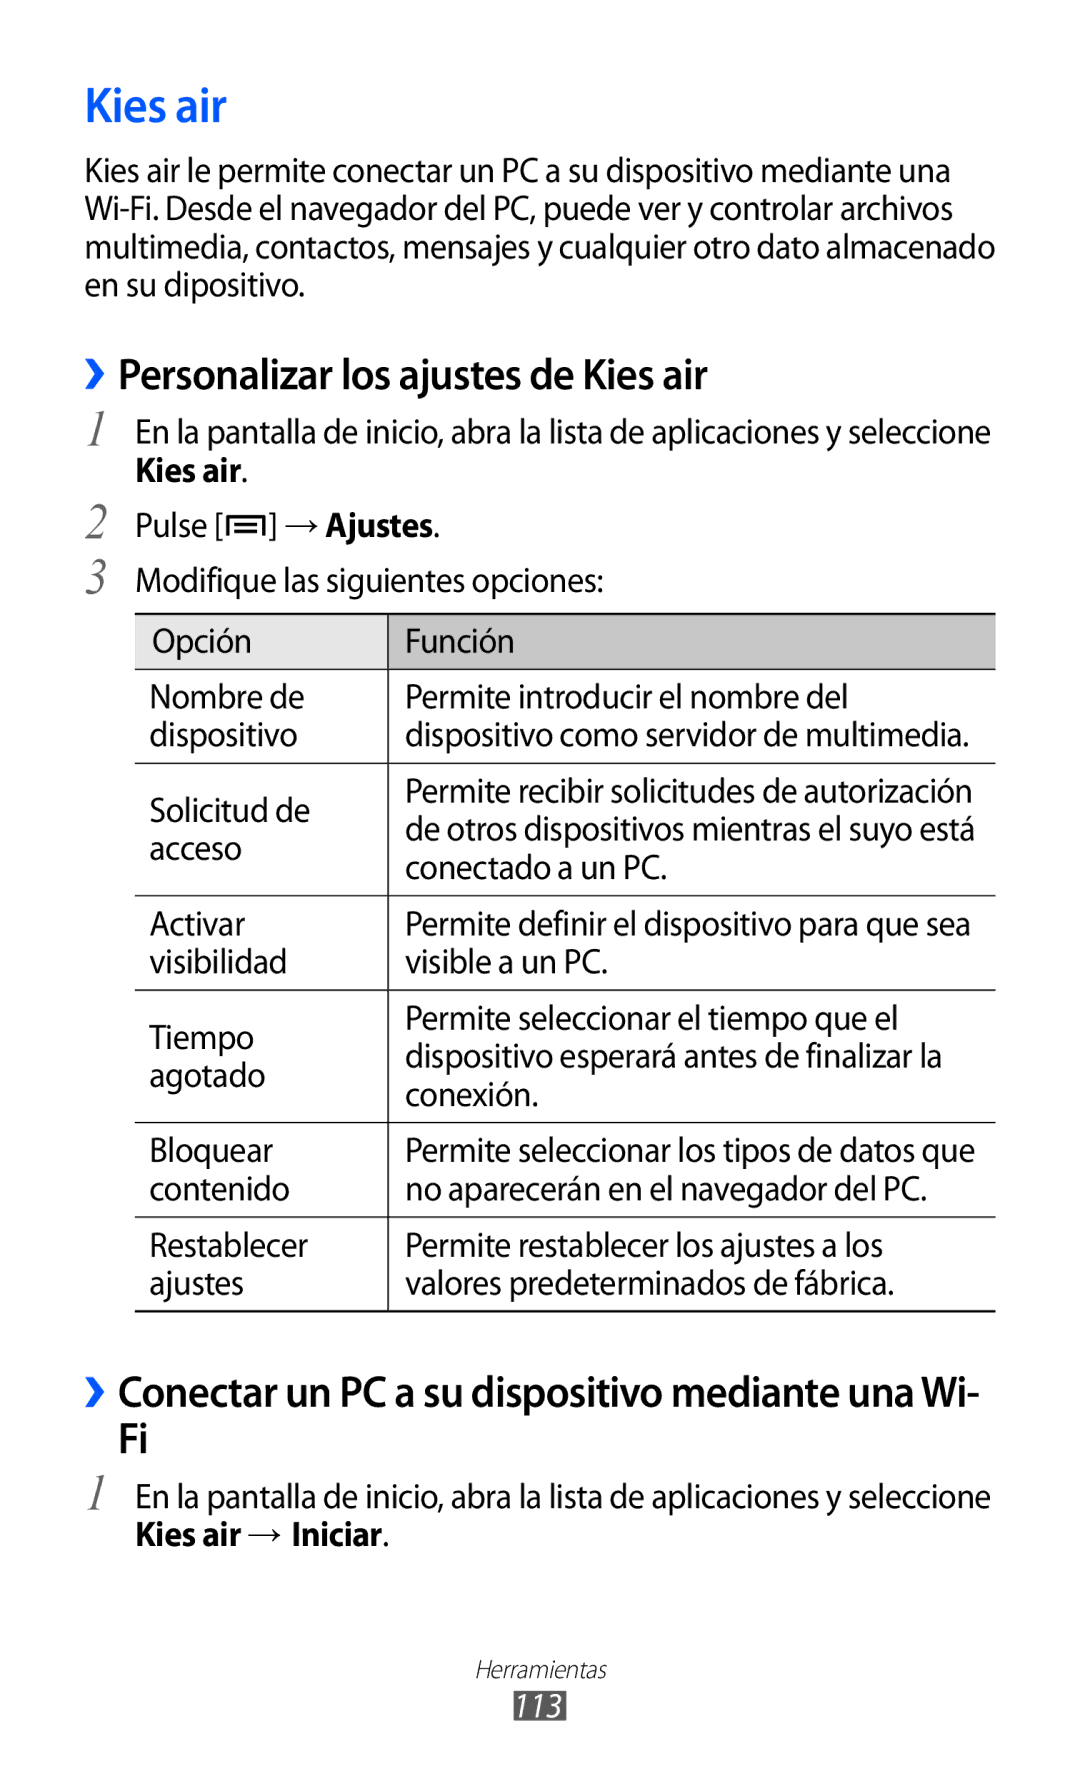 Samsung GT-S6500ZYDCOA ››Personalizar los ajustes de Kies air, ››Conectar un PC a su dispositivo mediante una Wi, 113 